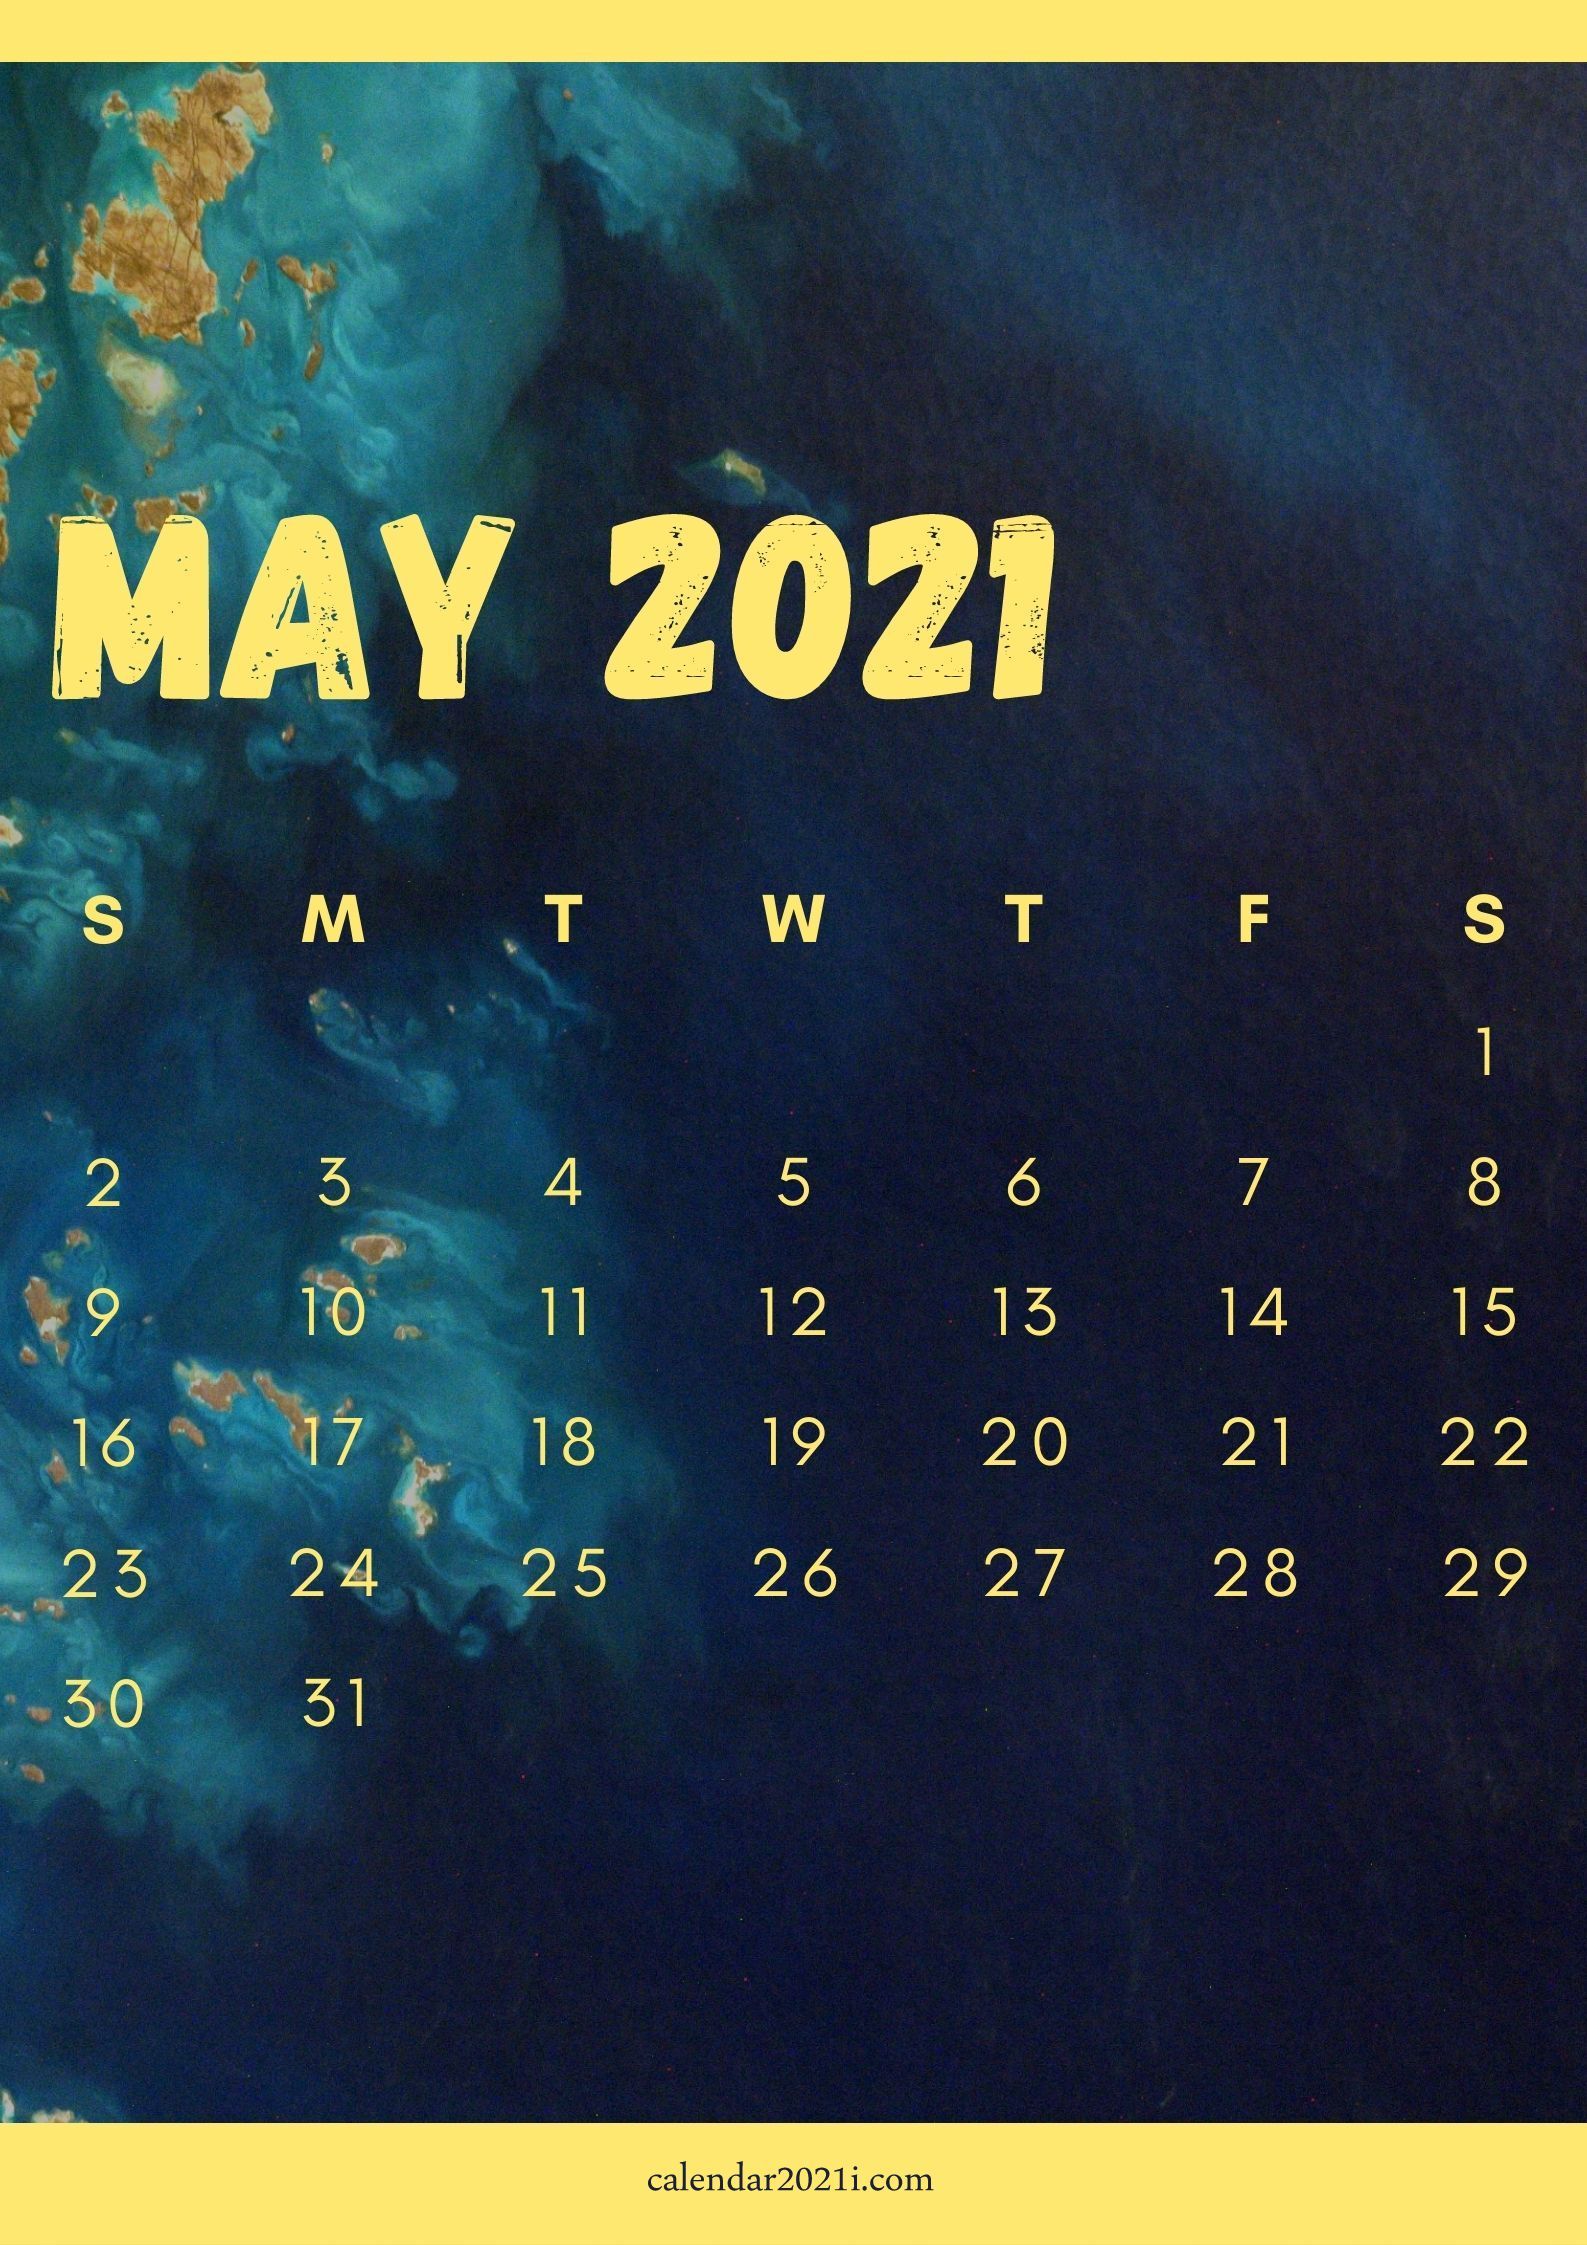 iPhone May 2021 Calendar Wallpaper Free Download